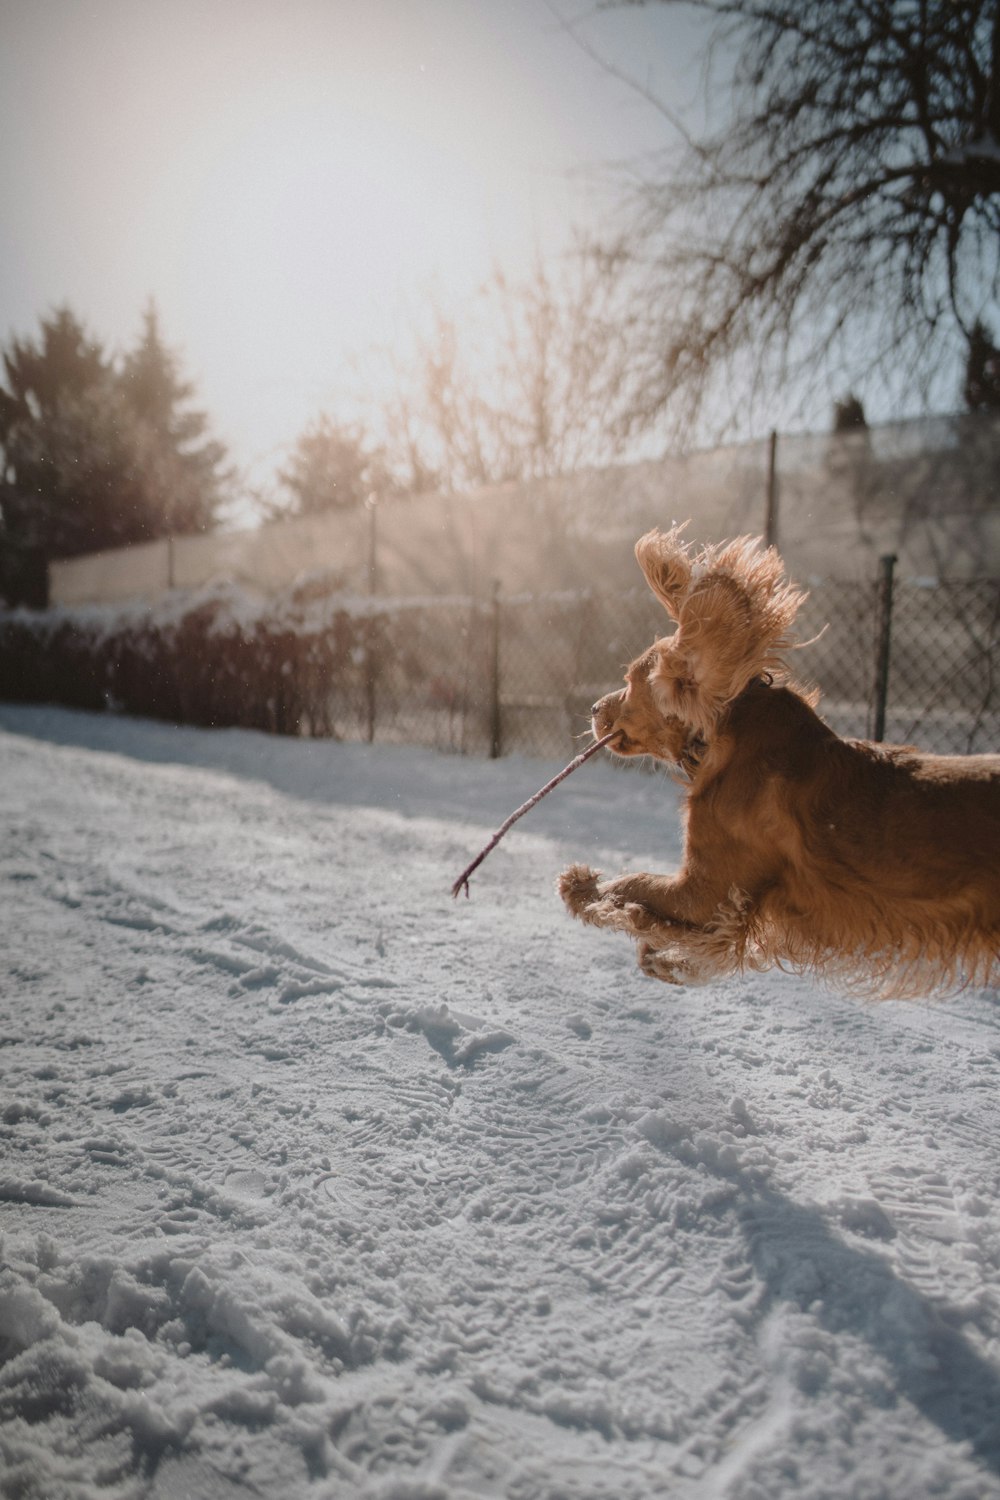 brauner langhaariger Hund, der tagsüber auf schneebedecktem Boden läuft